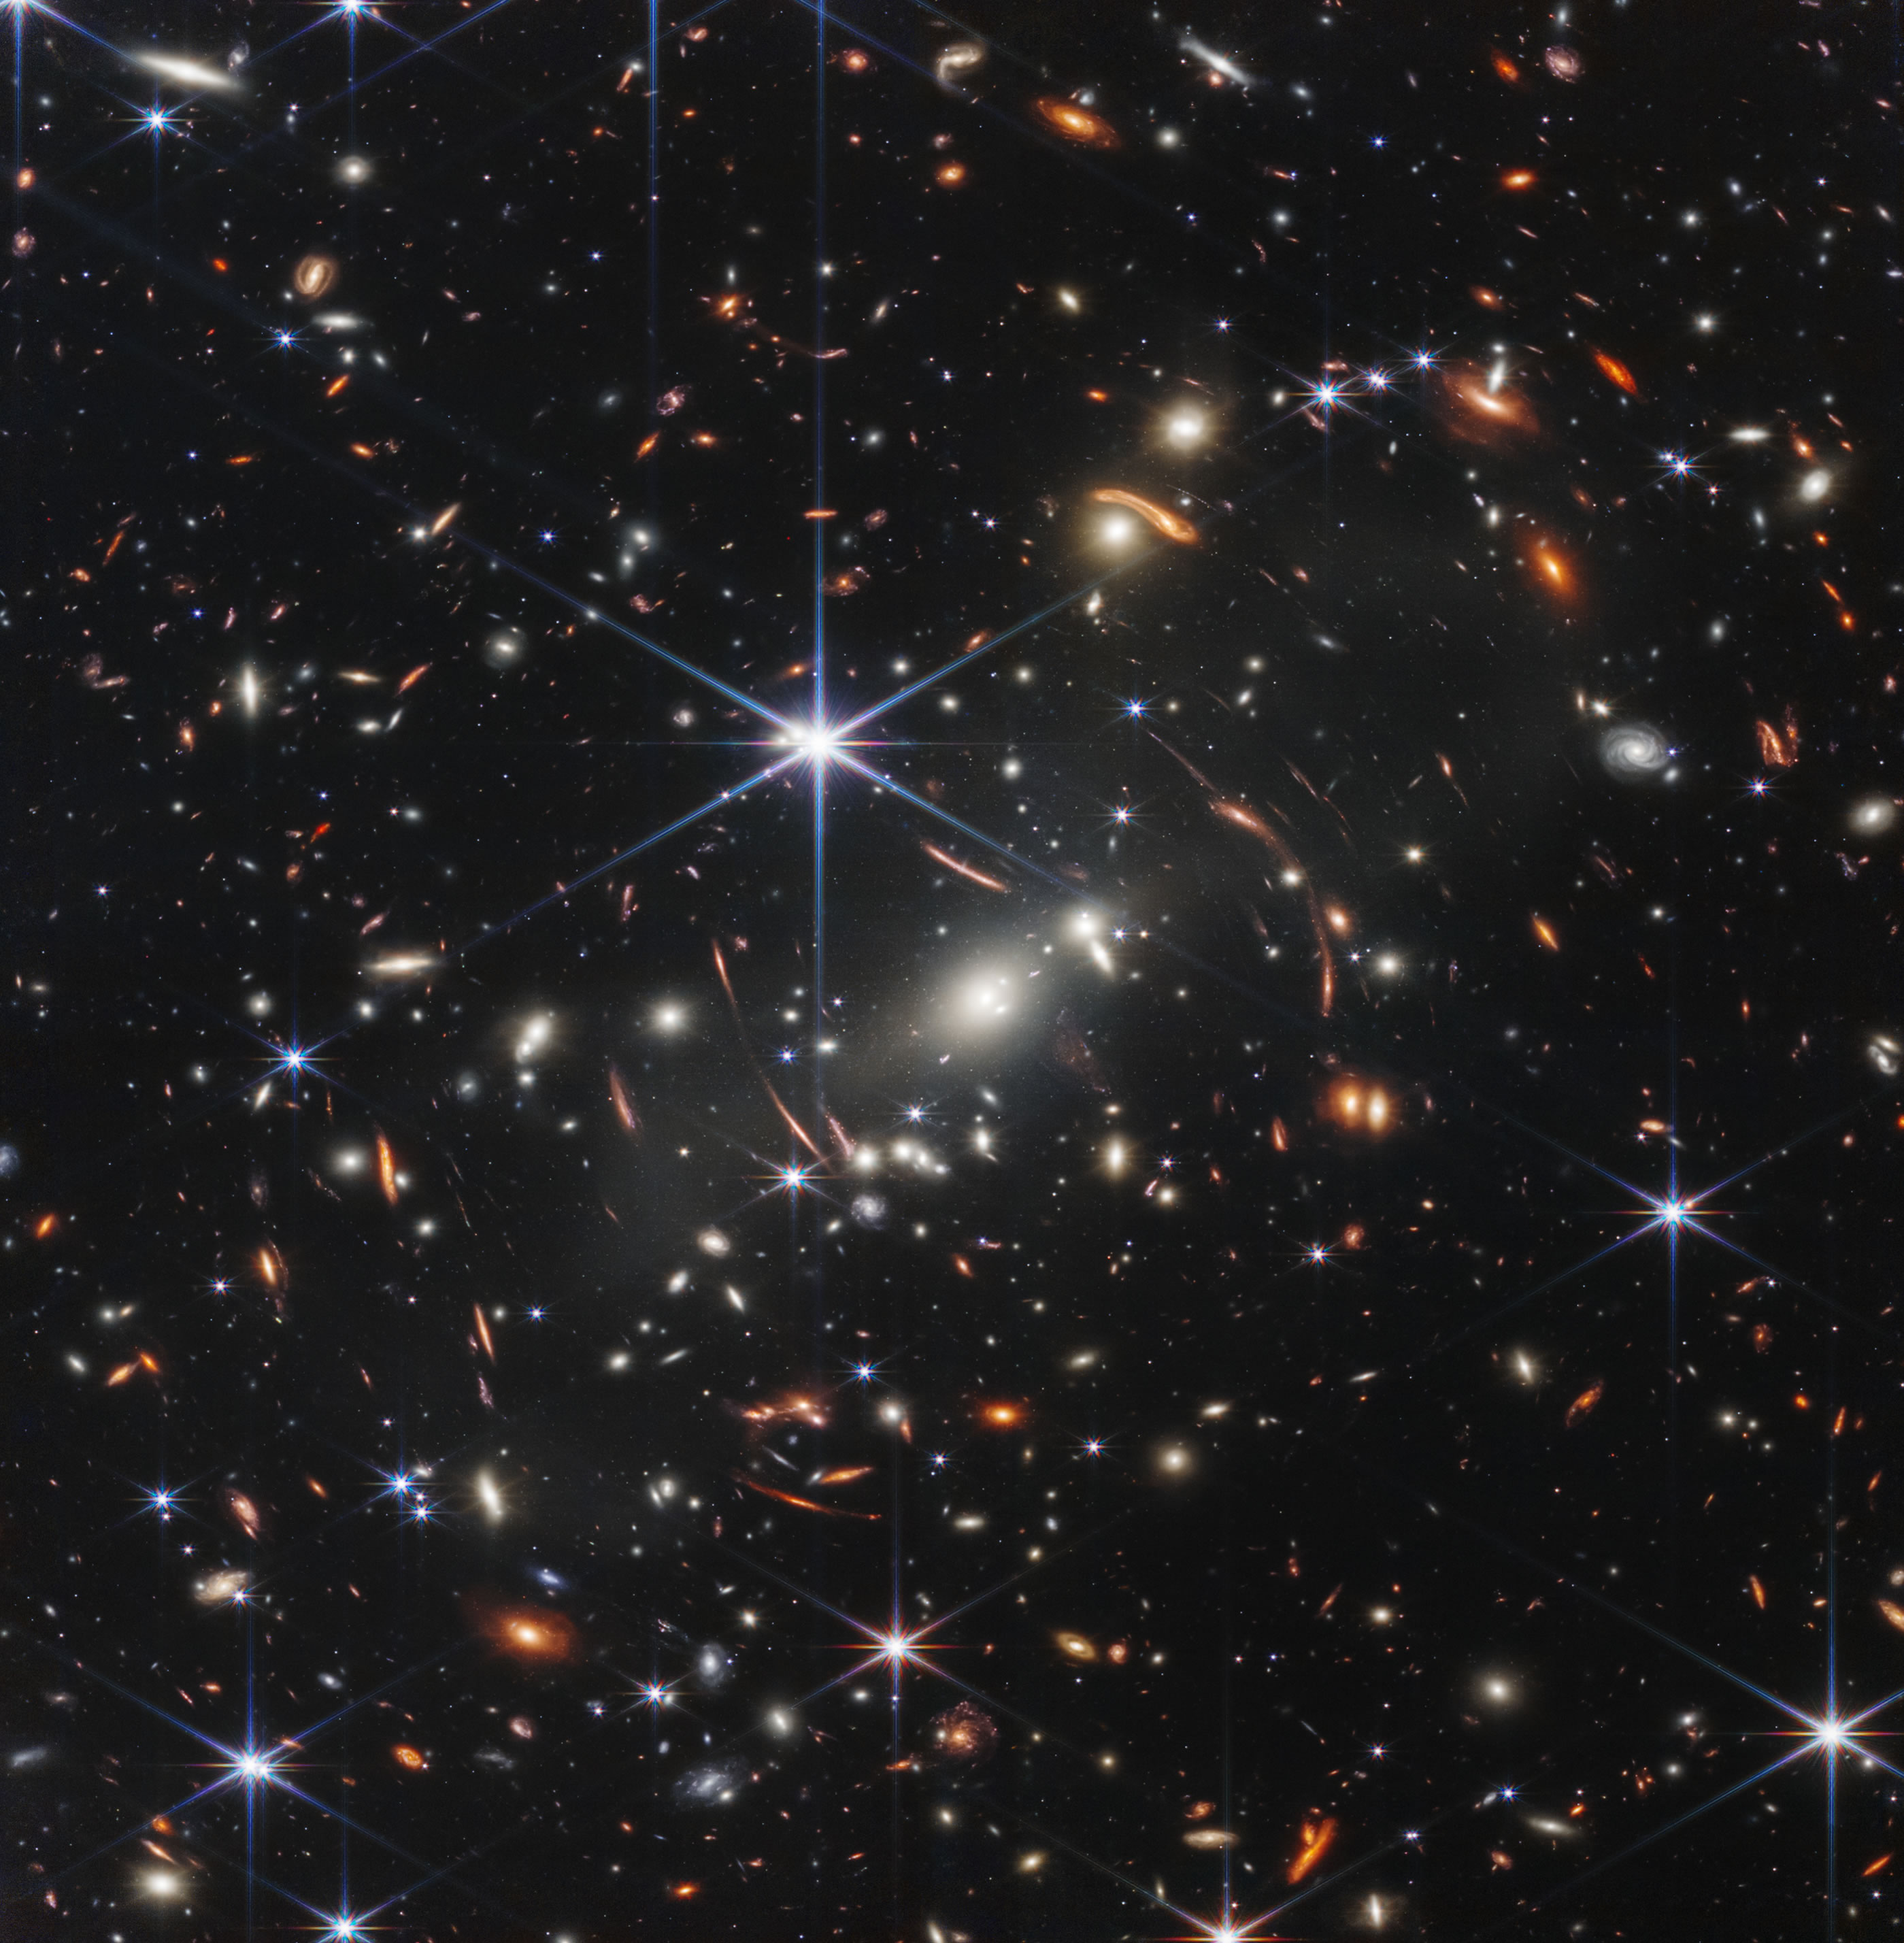 美国宇航局发布詹姆斯·韦伯太空望远镜第一张官方图片 揭示46亿光年外的宇宙深处